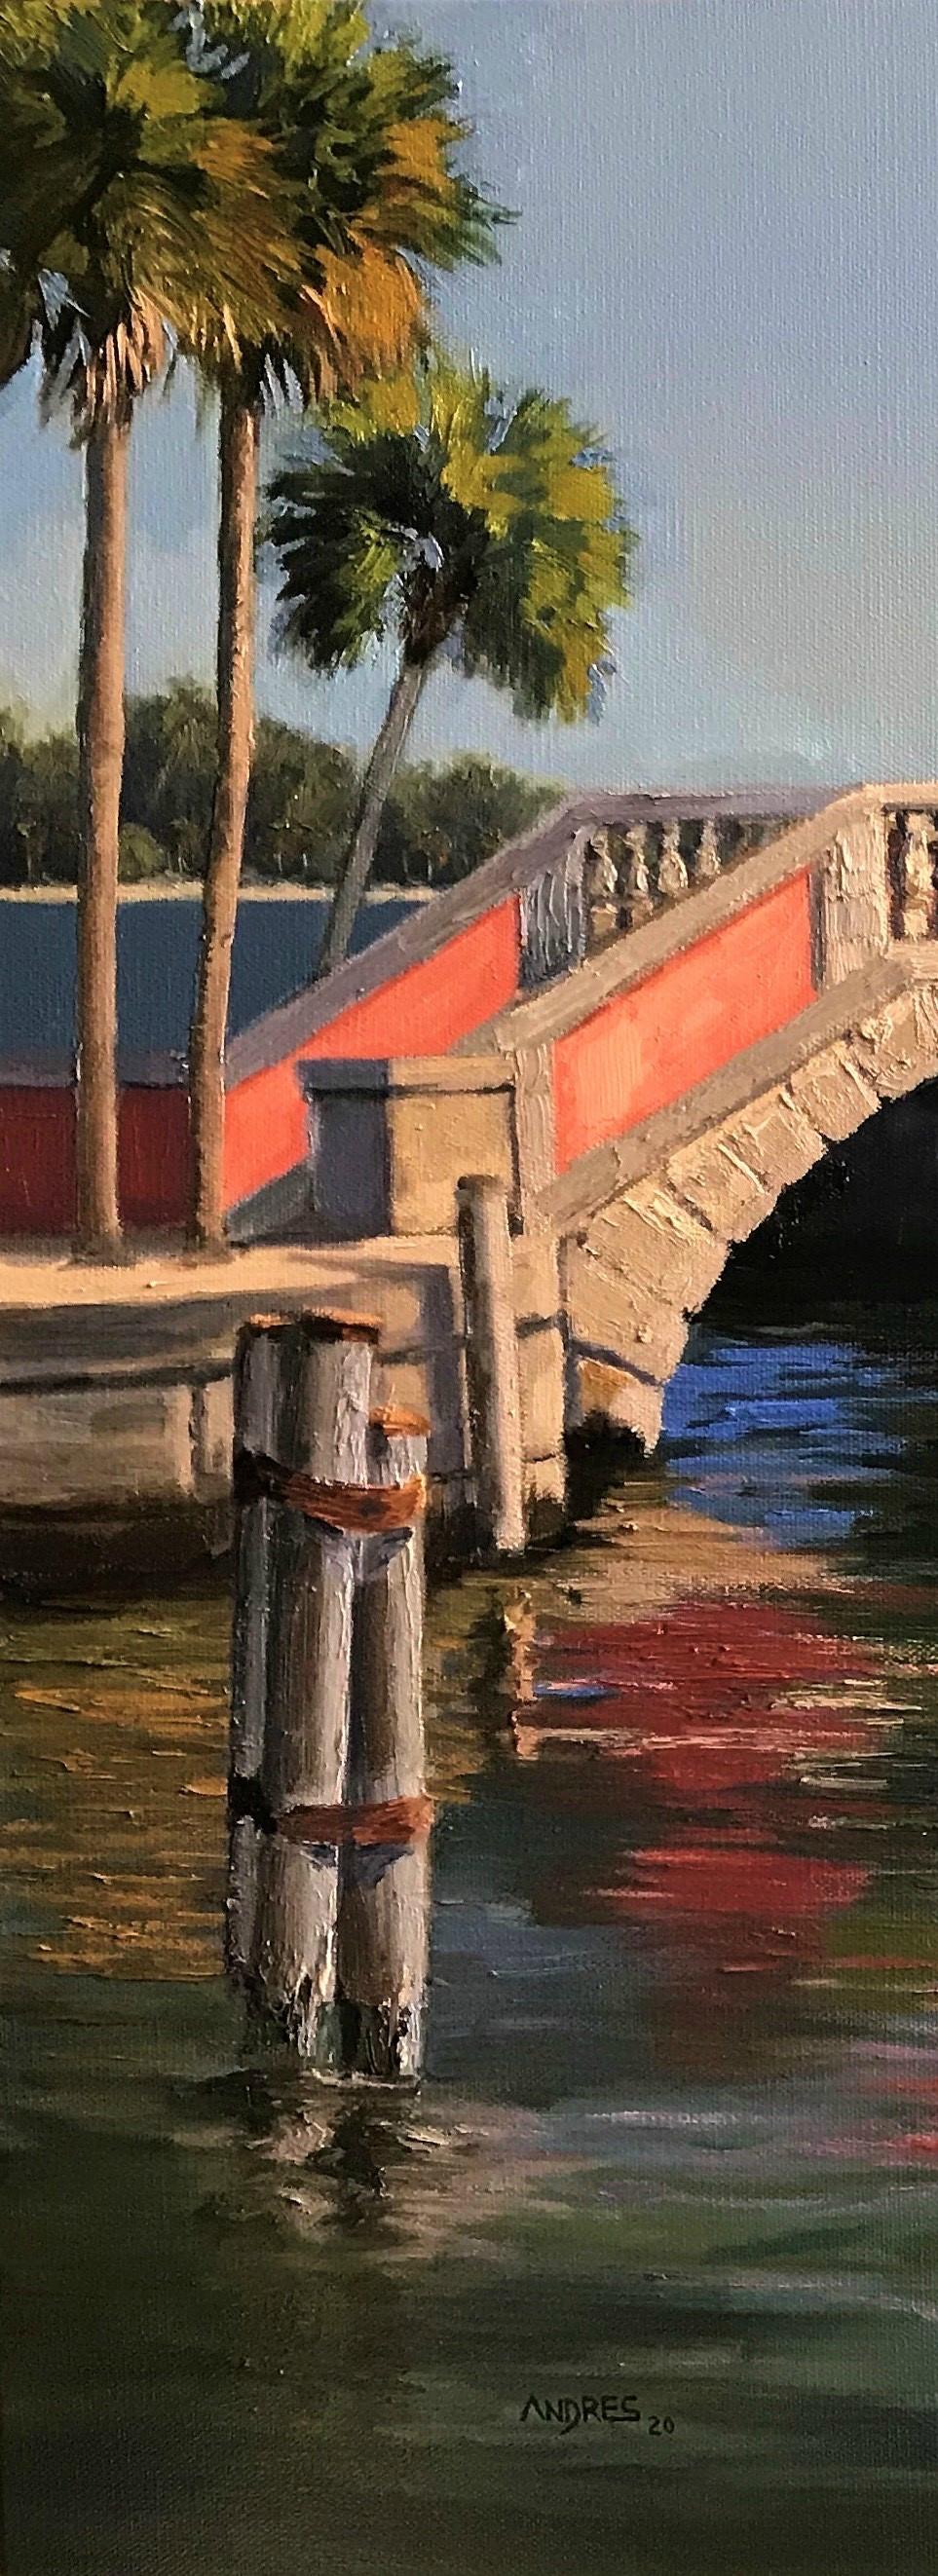 Gemälde der Alten Brücke, Wasser- und Landschaftsbilder, Schönheit der Natur, amerikanischer Traum (Realismus), Painting, von Andres Lopez